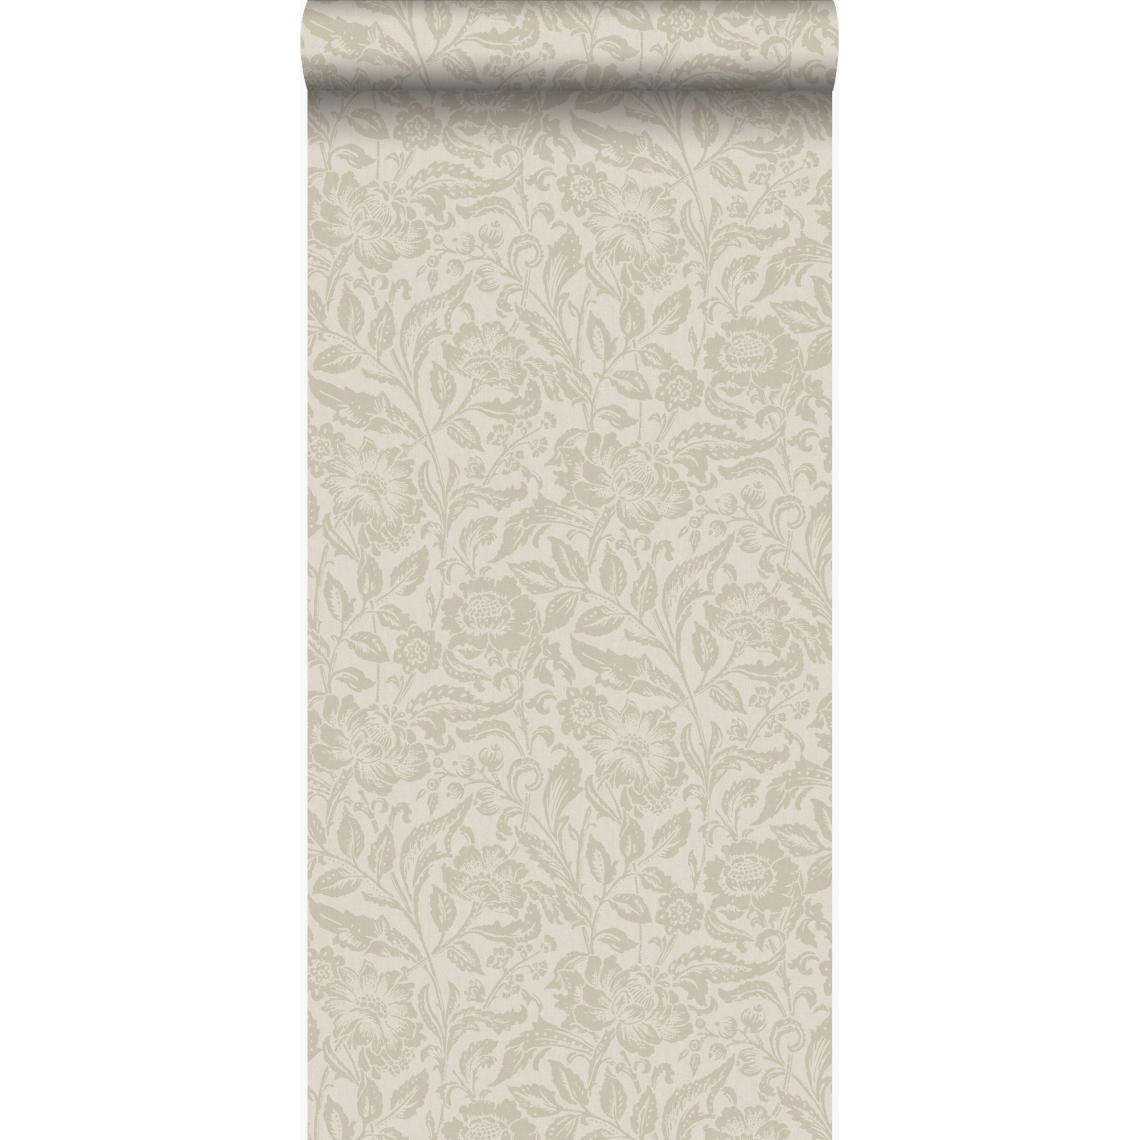 Origin - Origin papier peint fleurs cervine - 347024 - 53 cm x 10,05 m - Papier peint